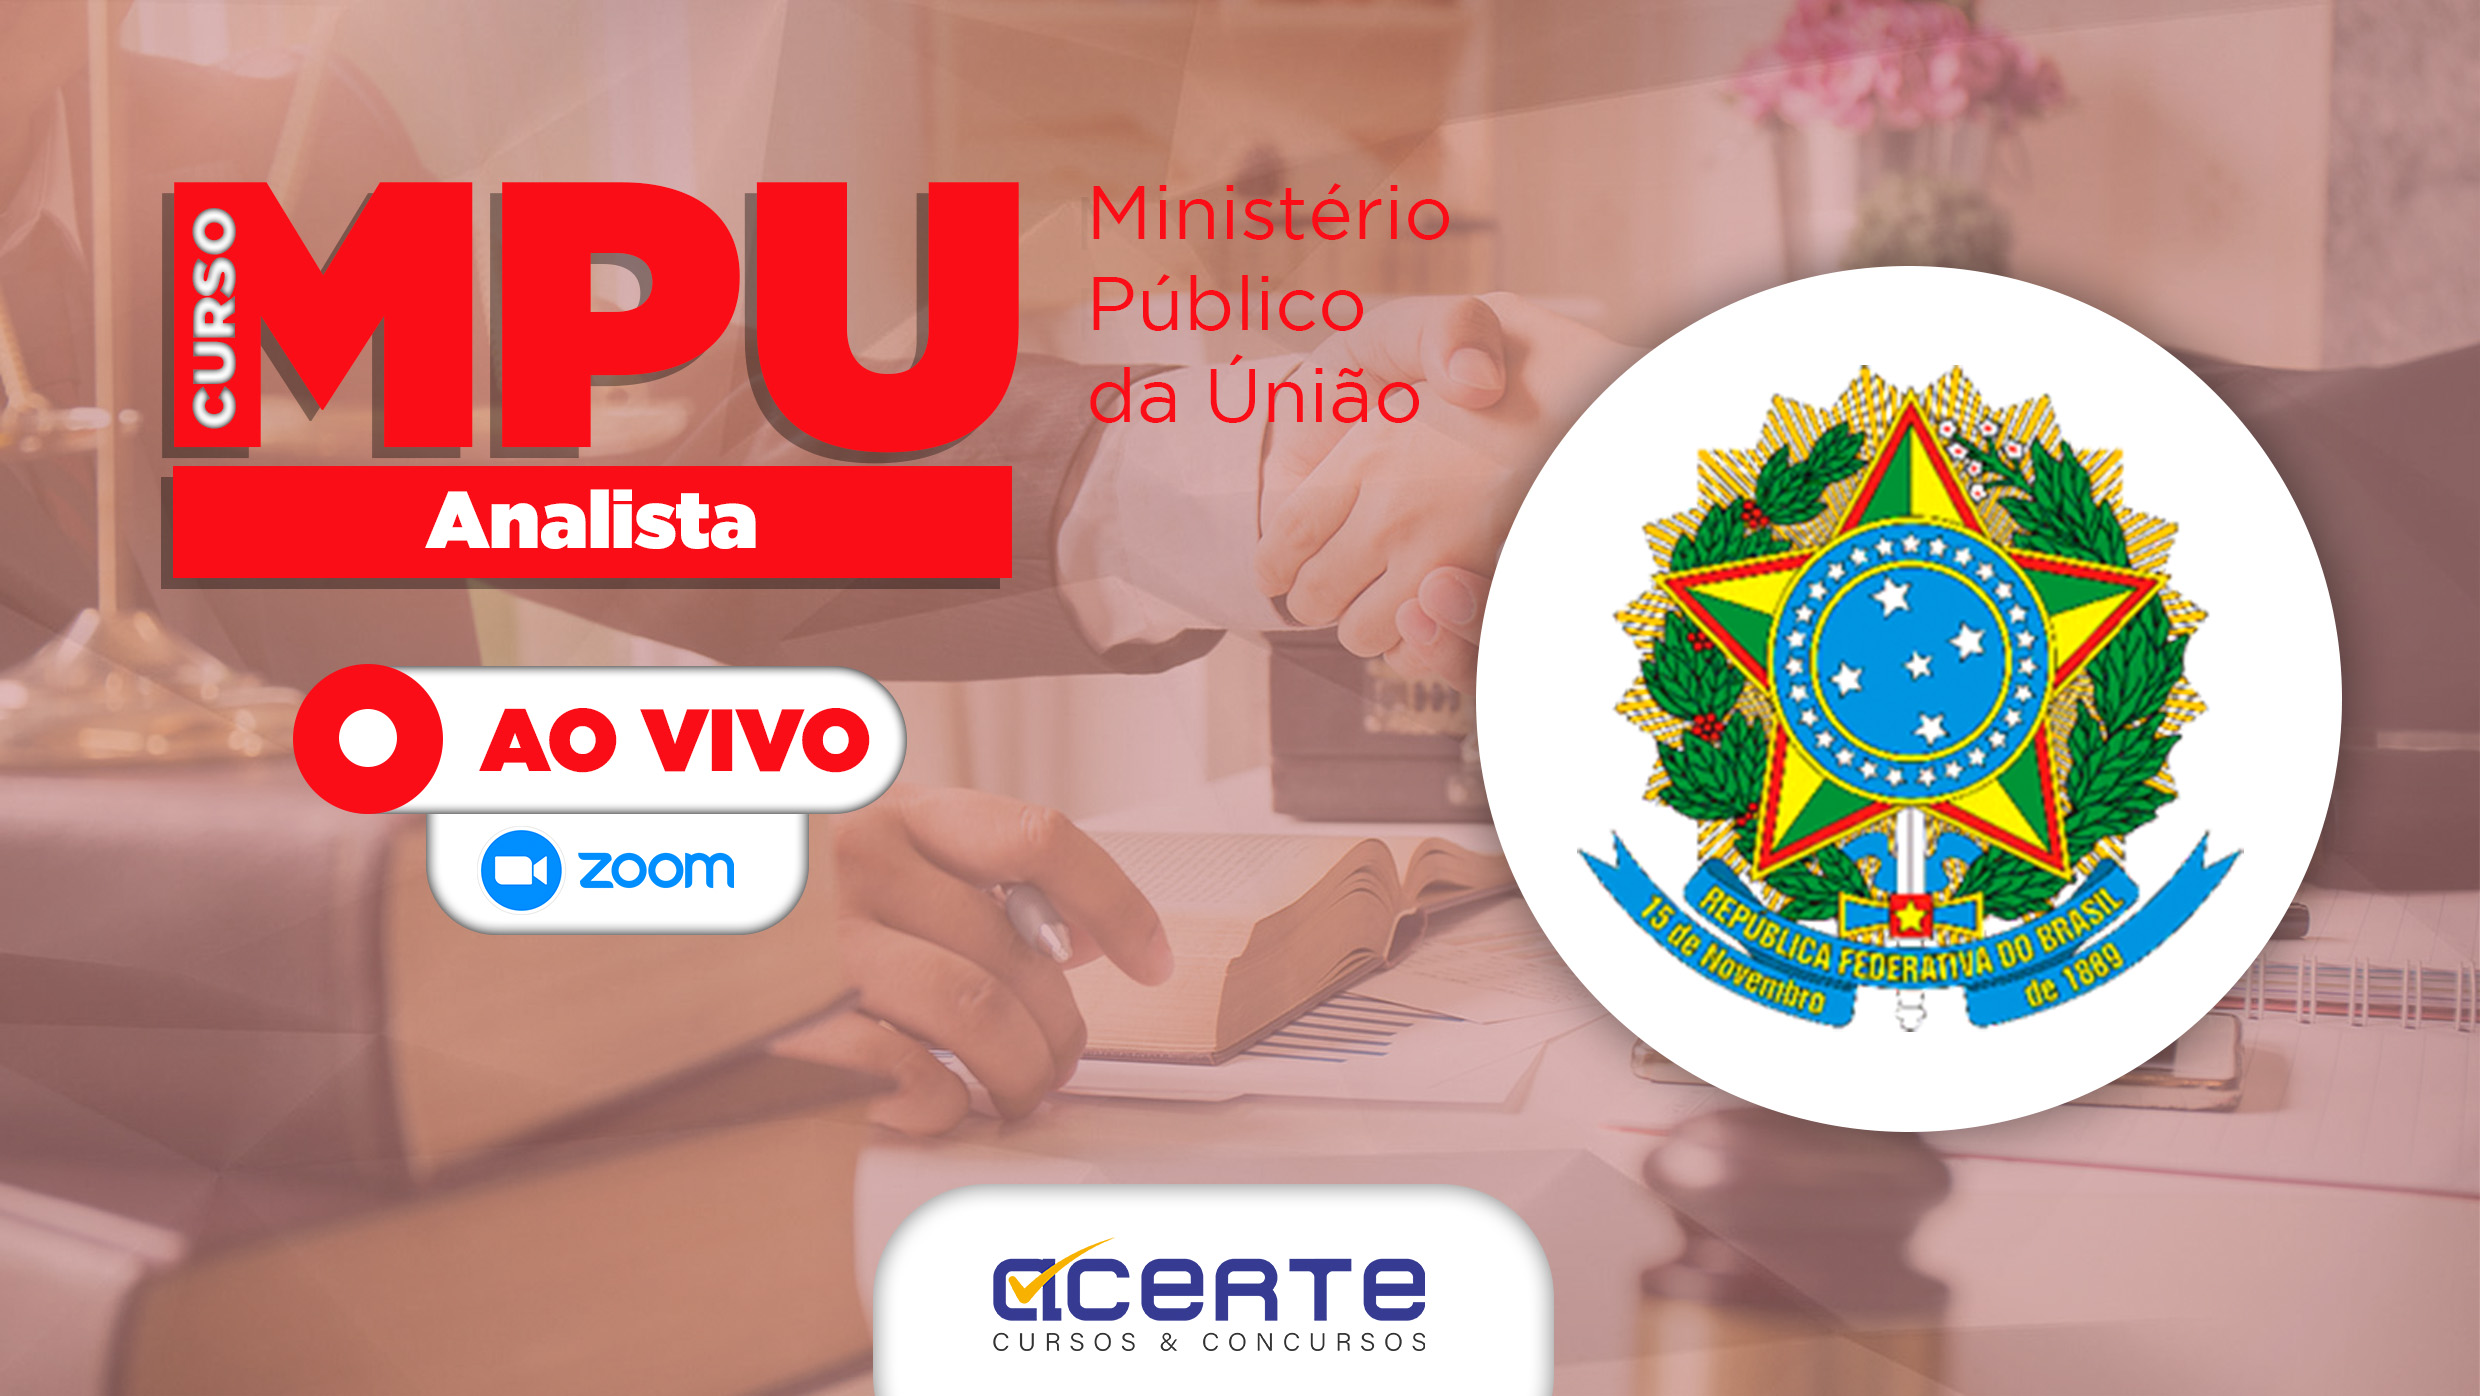 MPU - Ministério Público da União - Analista - AO VIVO